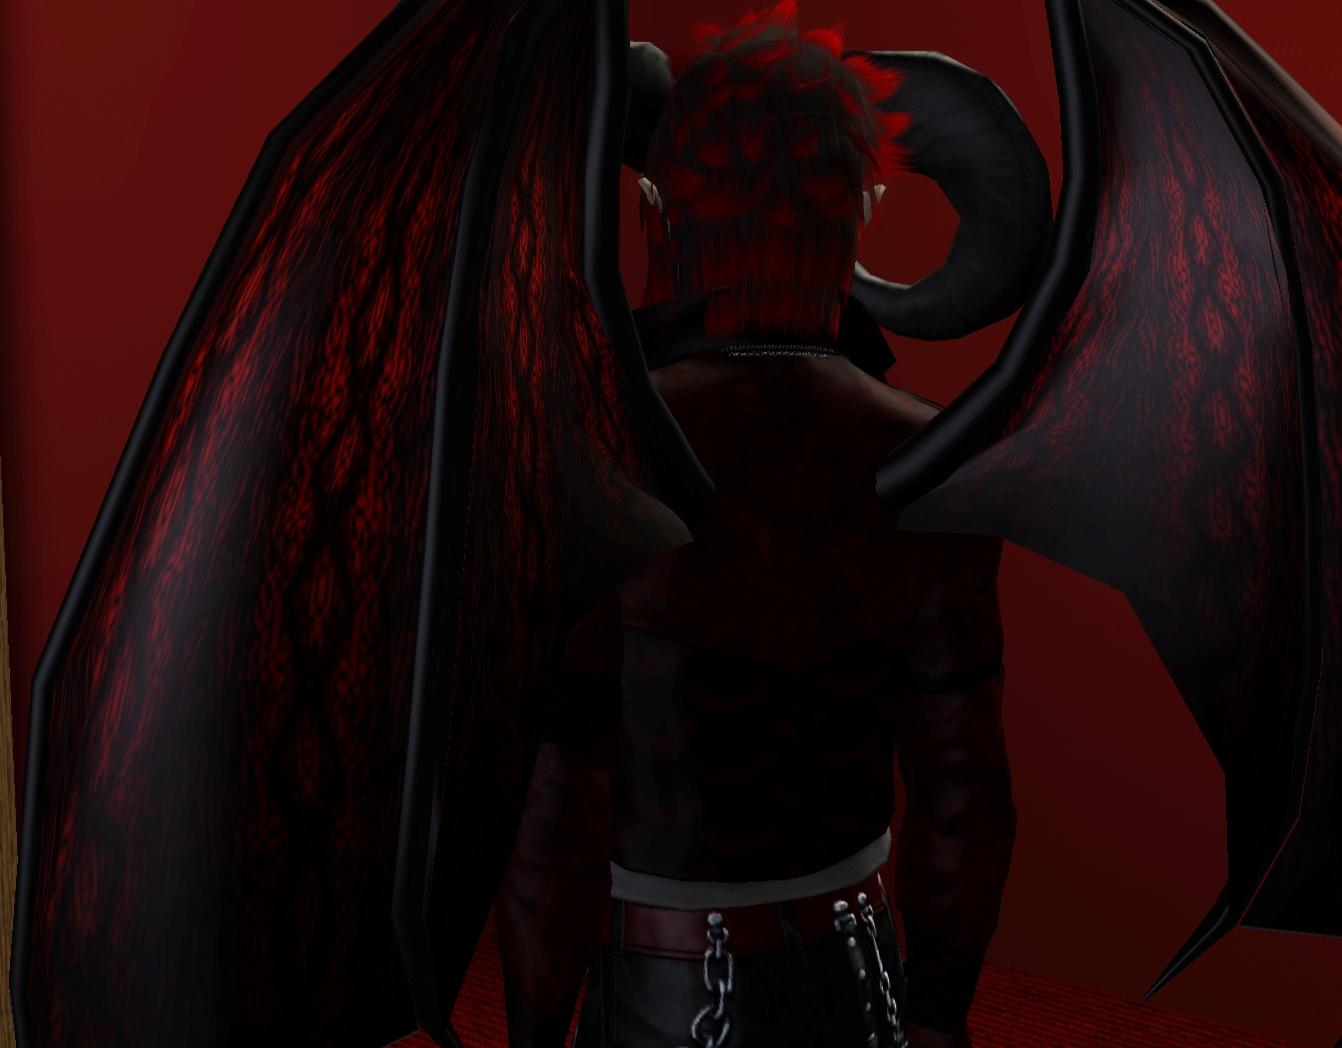 Sims 4 Devil Mod